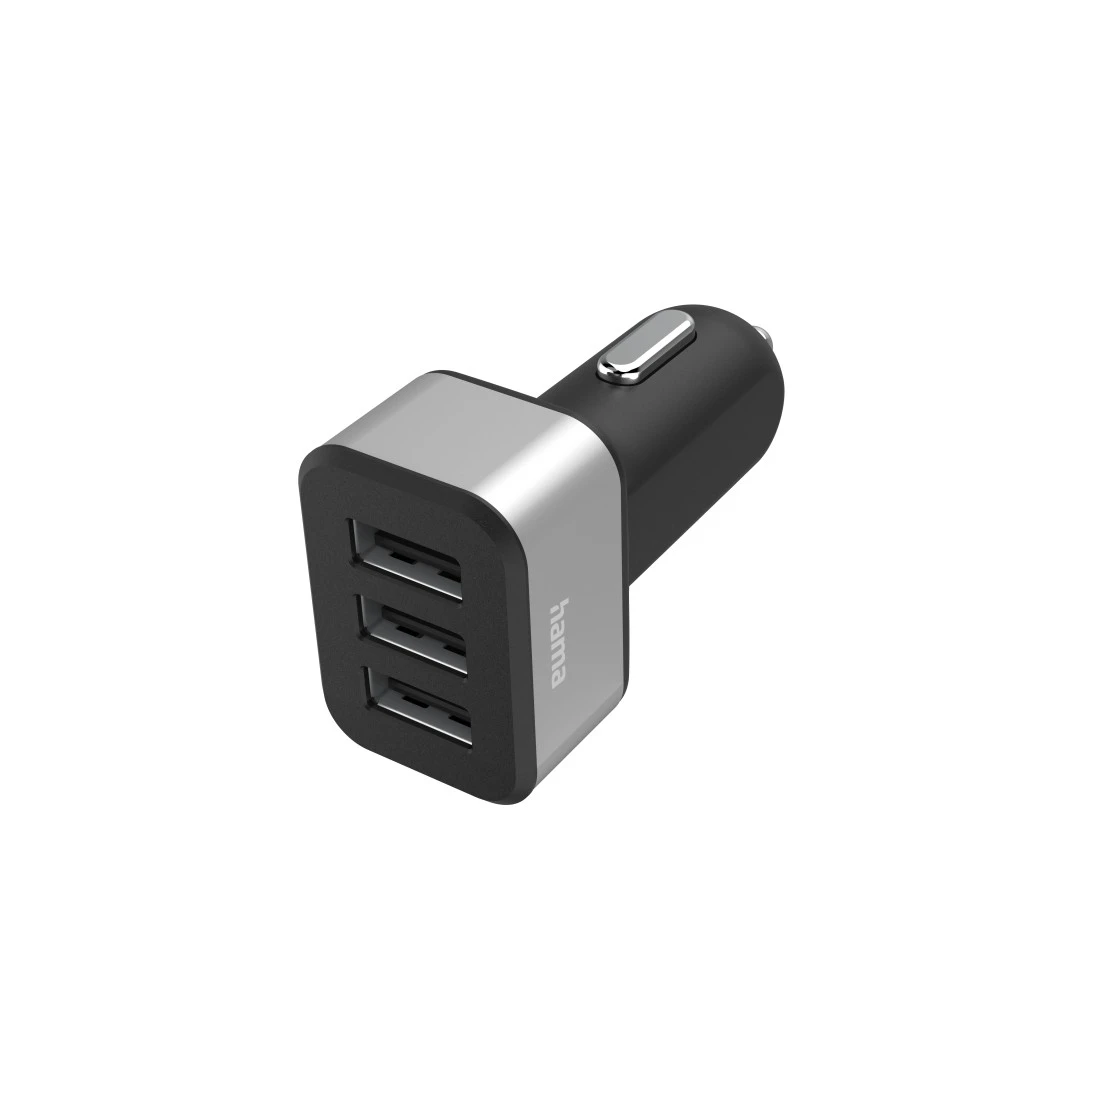 Chargeur USB triple pr all.-cigares, adapt. de chrge pr voit., 12V / 24V